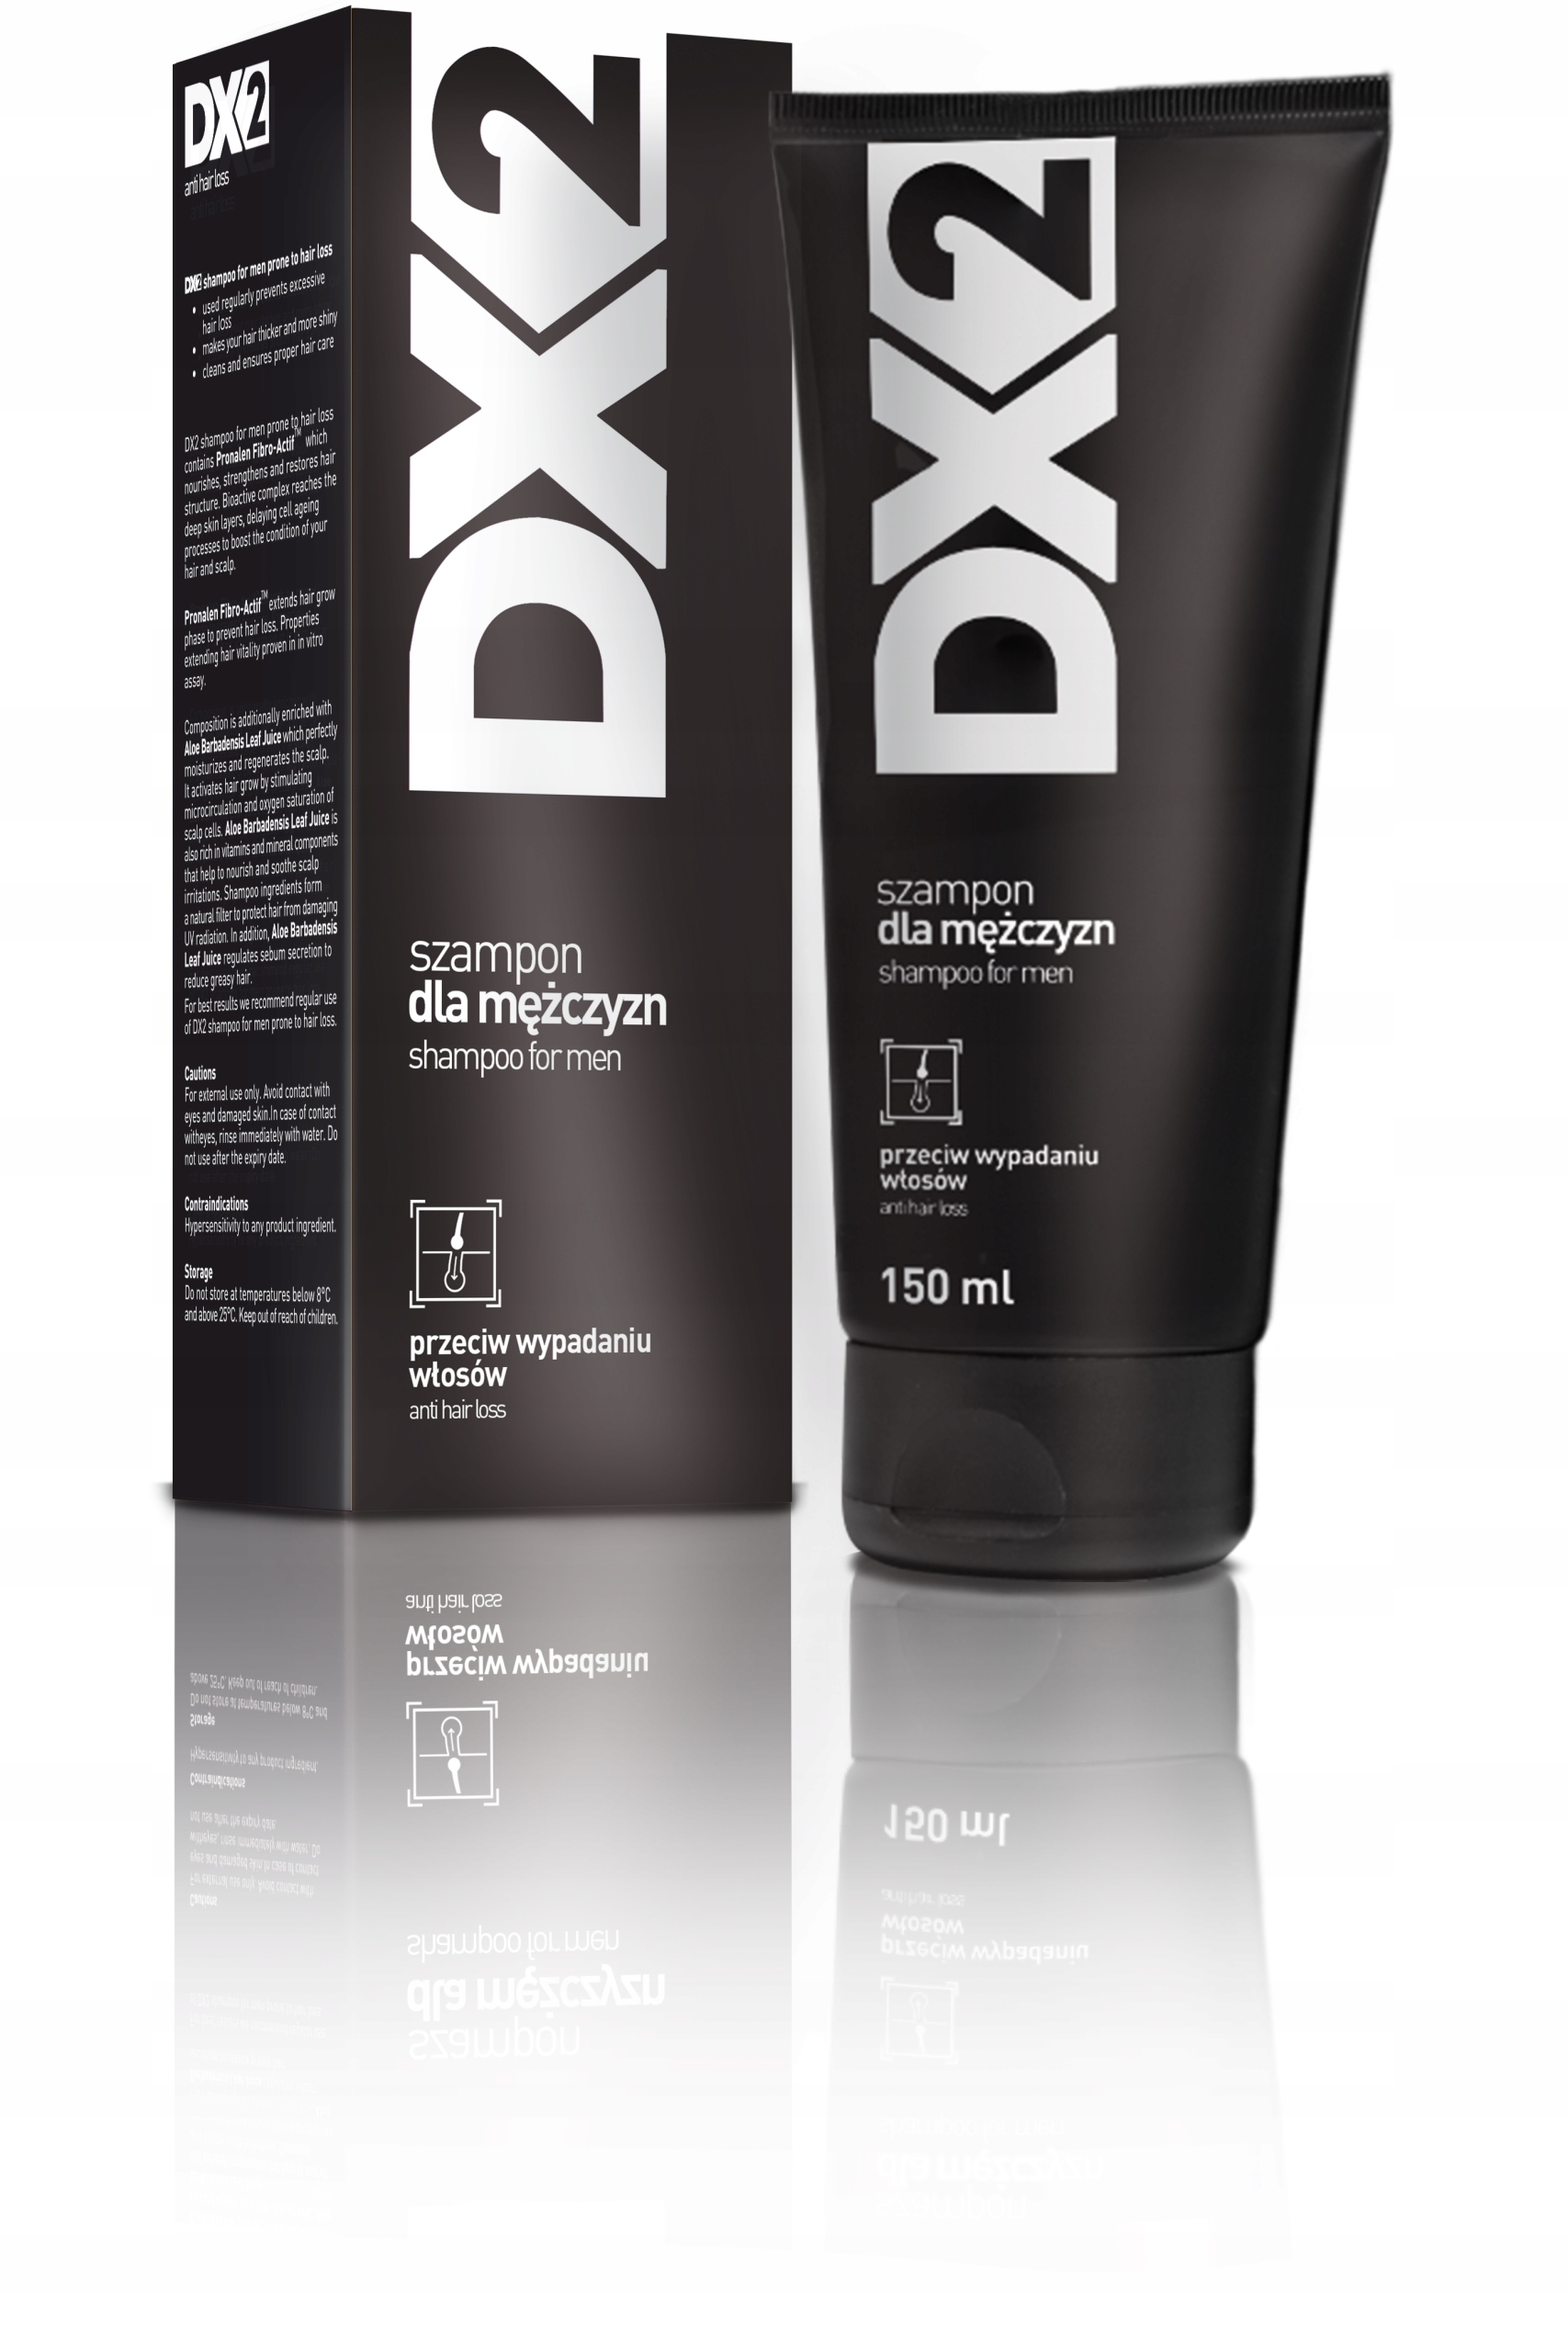 dx2 szampon ceneo